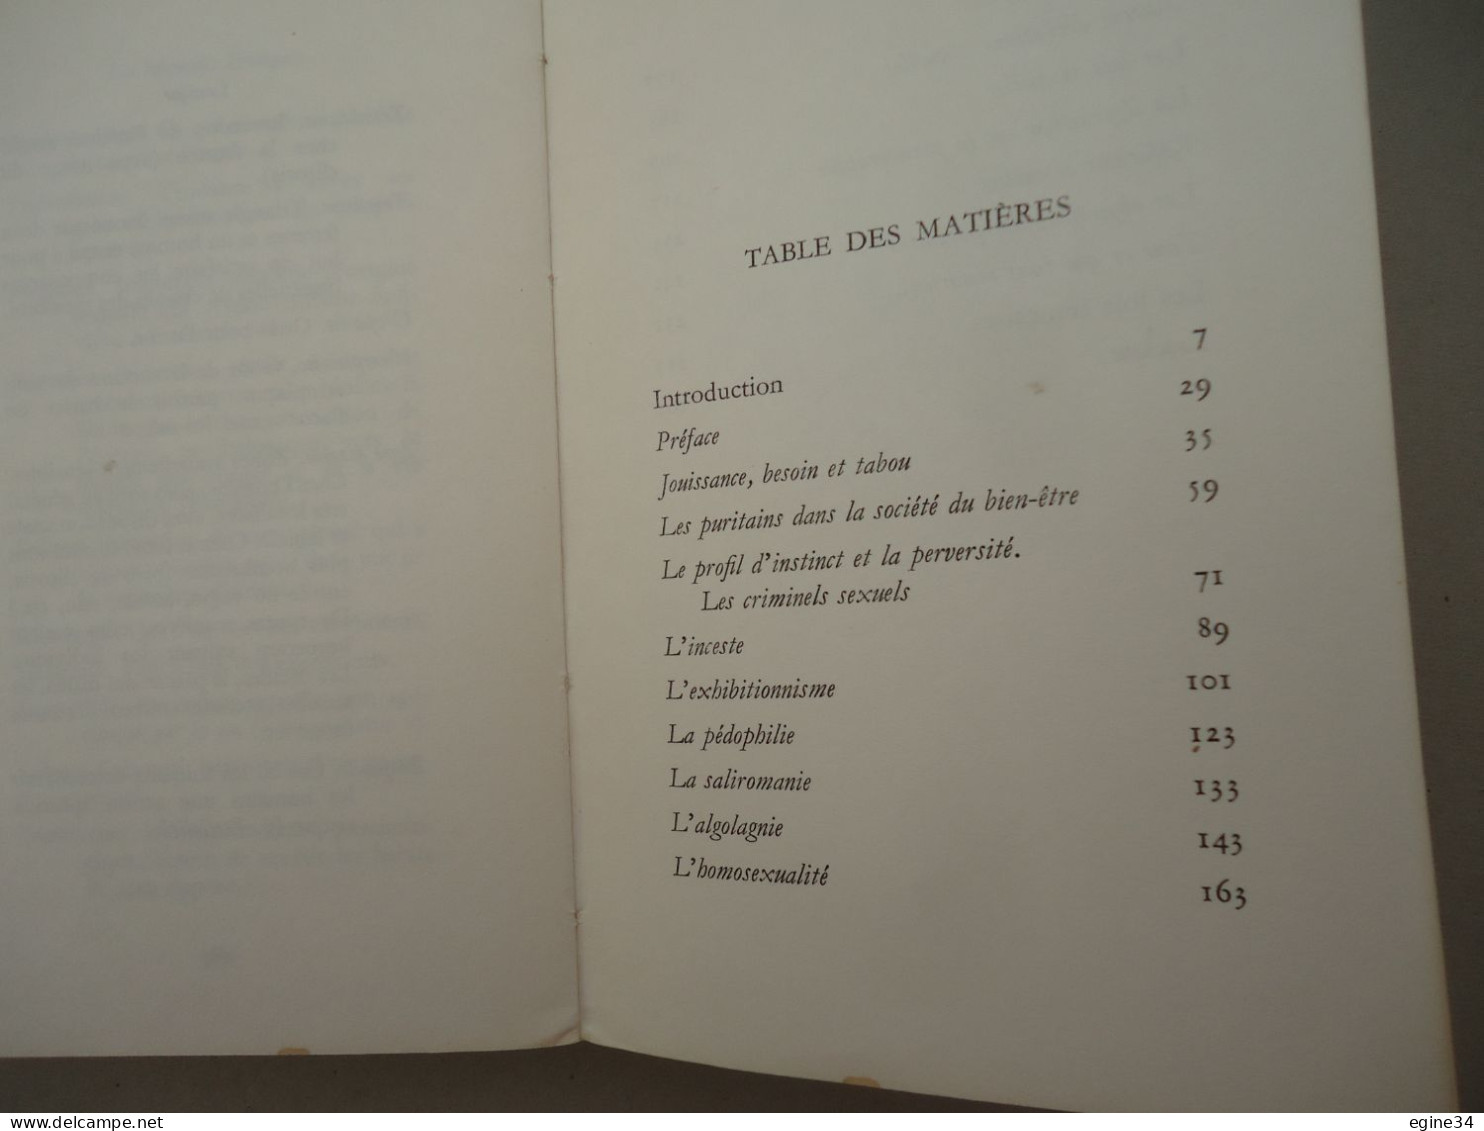 Editions Jean-Jacques  Pauvert - Dr Lars Ullerstam - Les Minorités Erotiques - 1965 - Sociologie